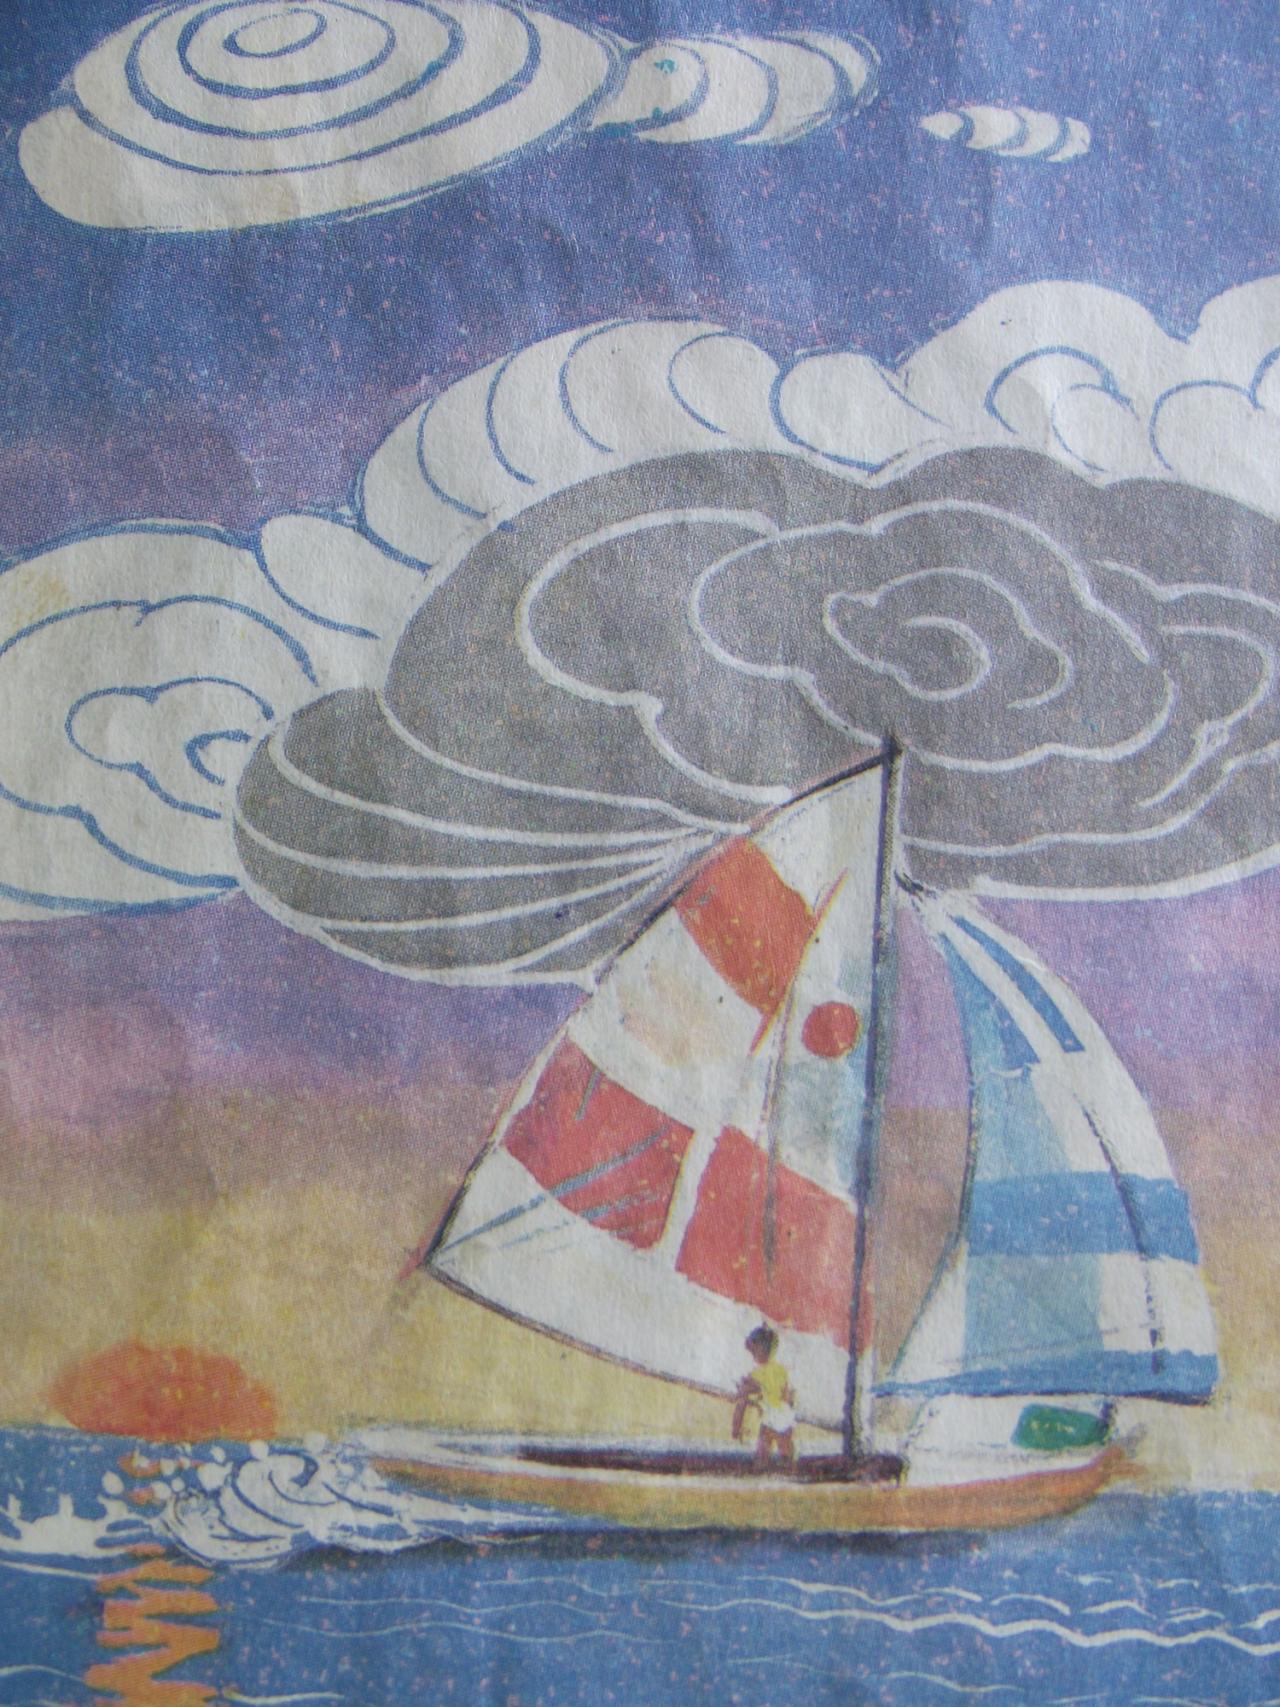 帆船 低视平线构图装饰画